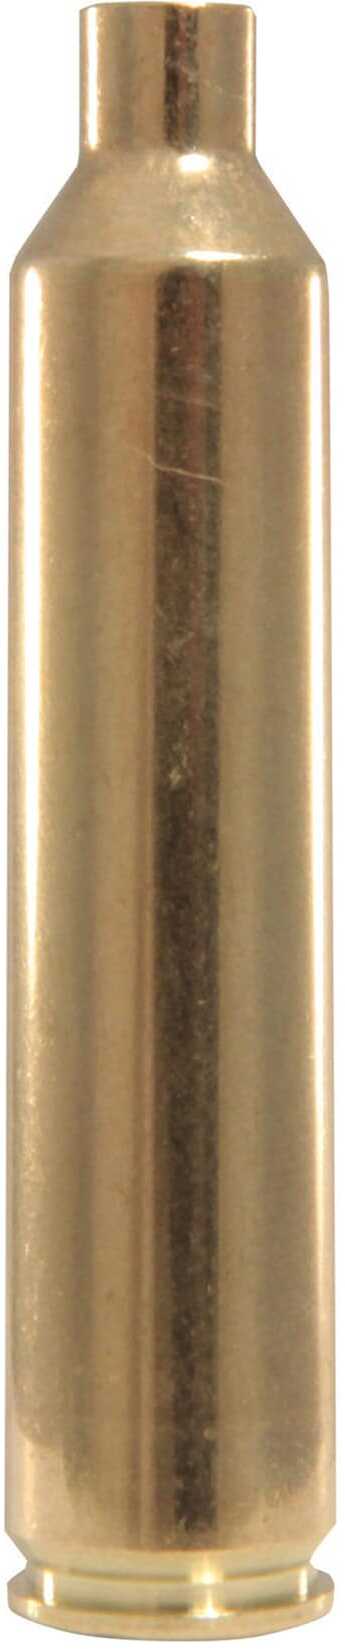 Hornady Unprimed Brass Rifle Cartridge Cases .26 Nosler 20/Rd